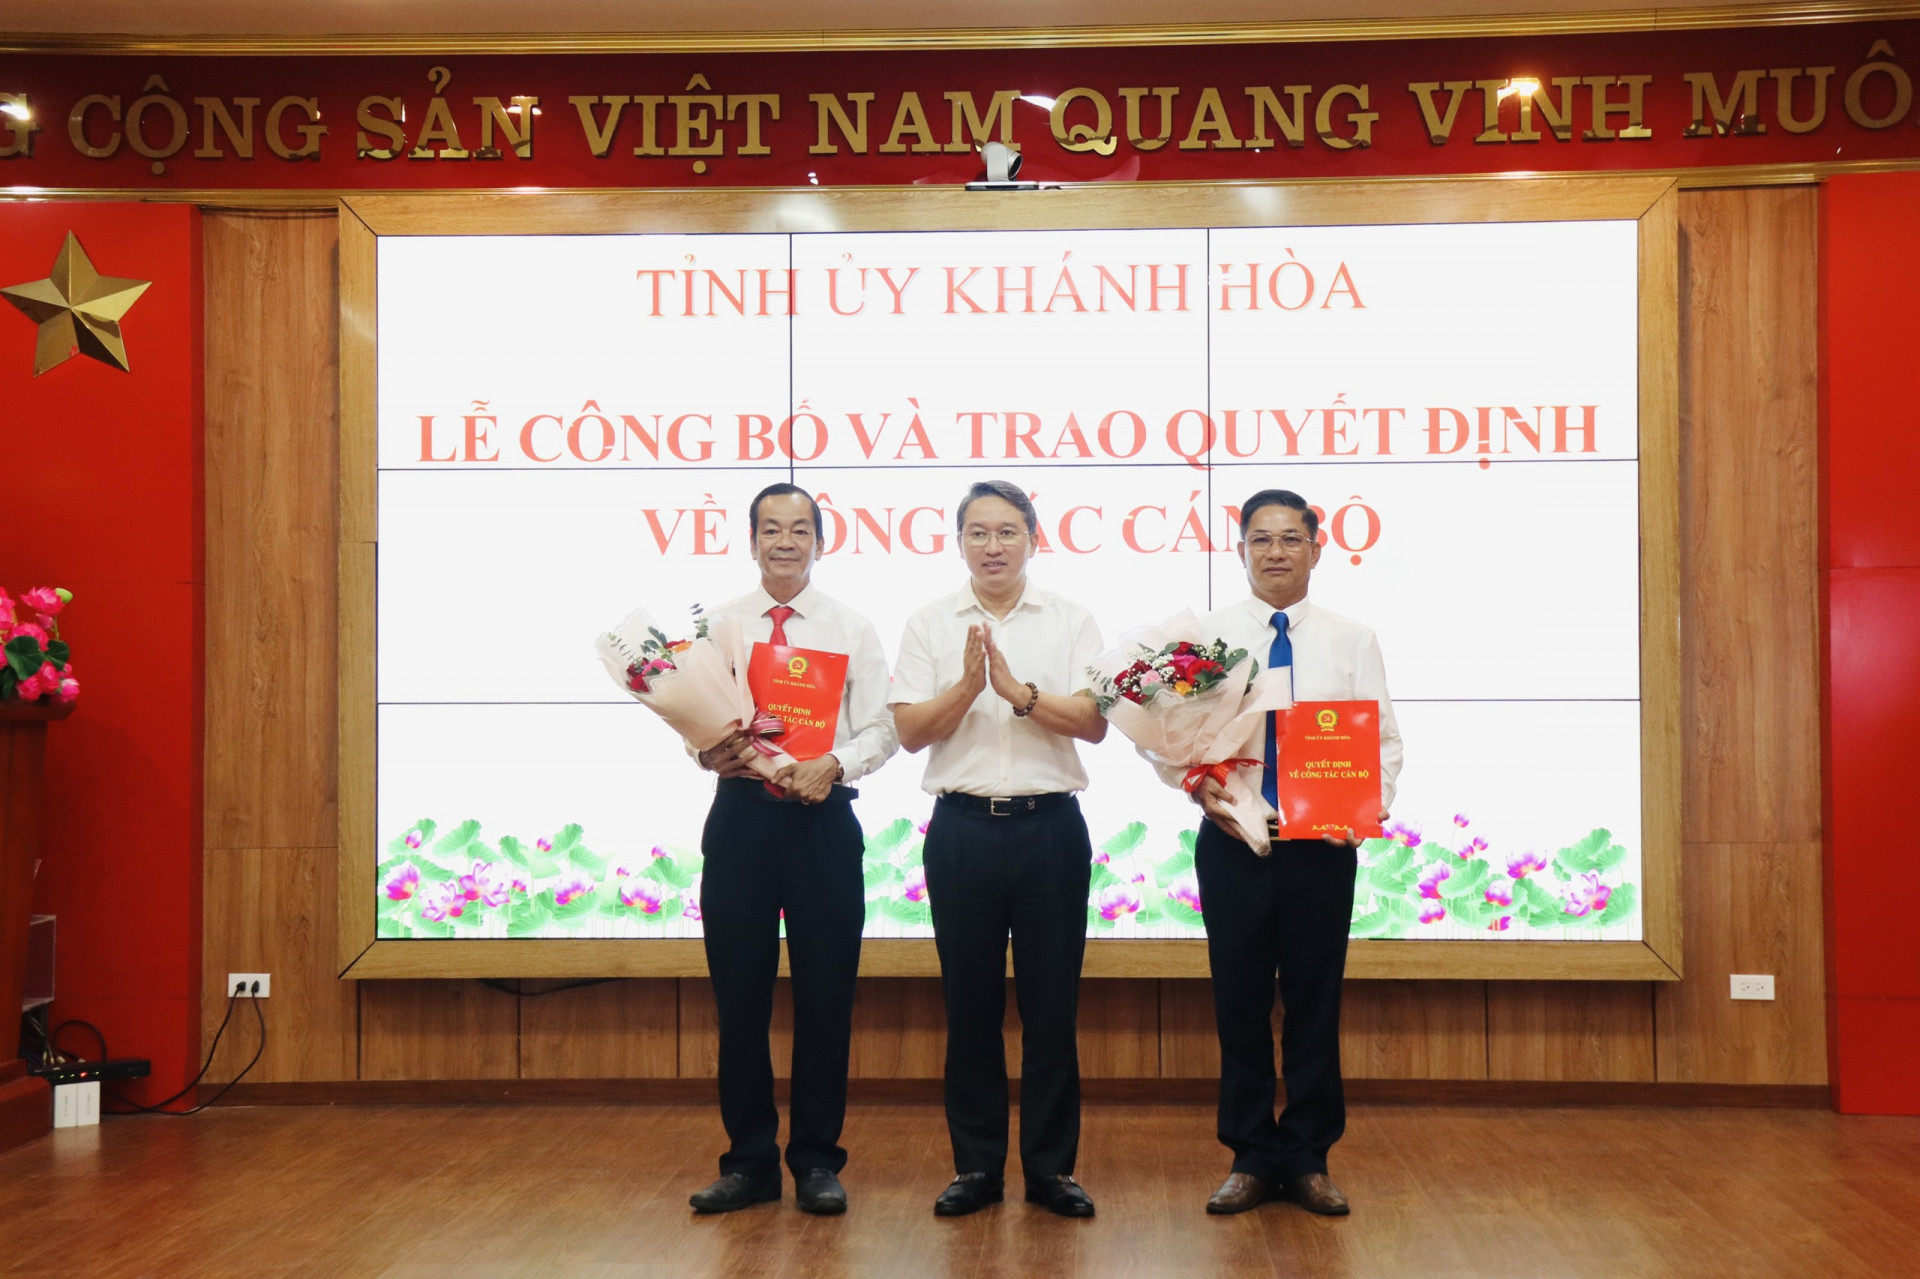 Bí thư Tỉnh ủy Khánh Hòa Nguyễn Hải Ninh trao quyết định cho đồng chí Nguyễn Văn Thiện và Đinh Văn Dũng